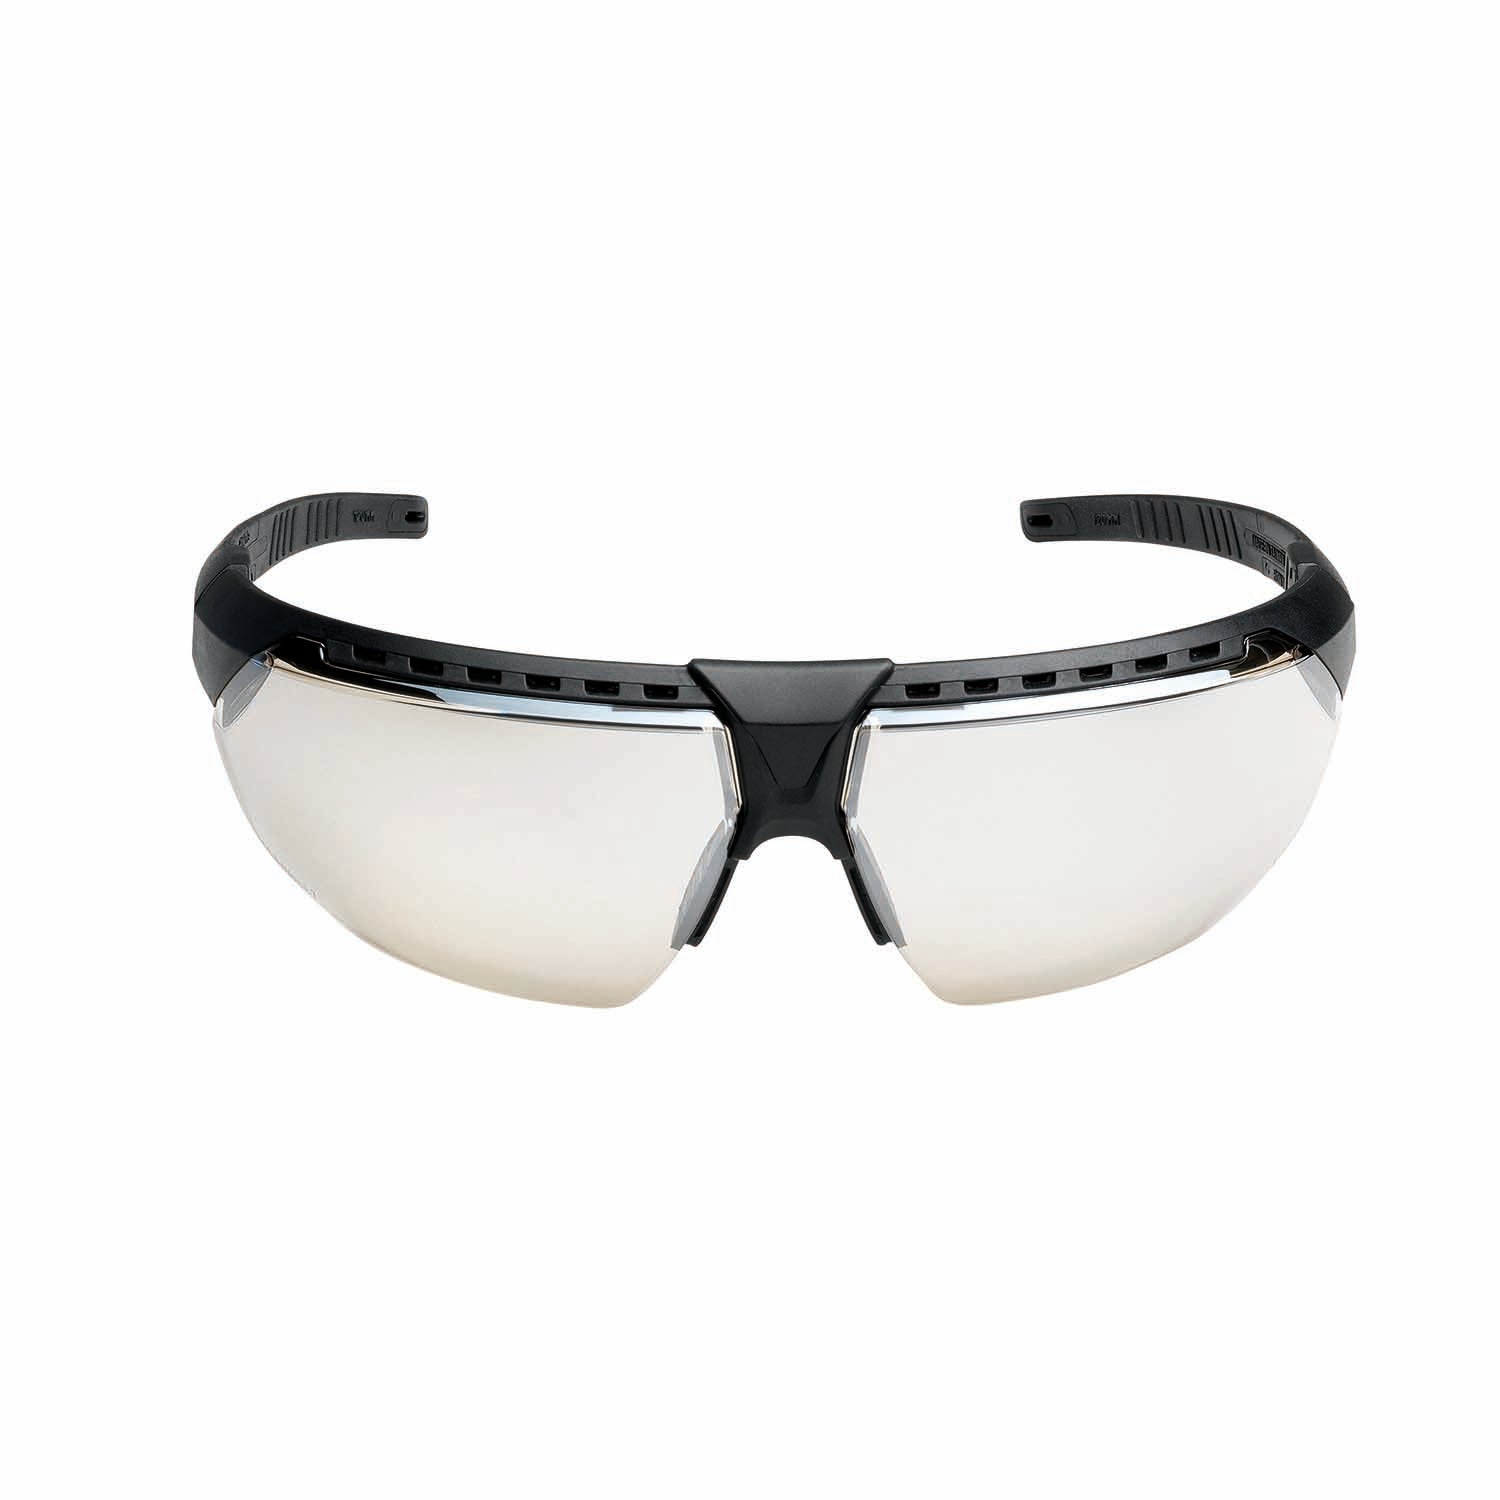 AVATAR Safety spectacles Honeywell 1034834 black frame I/O lens